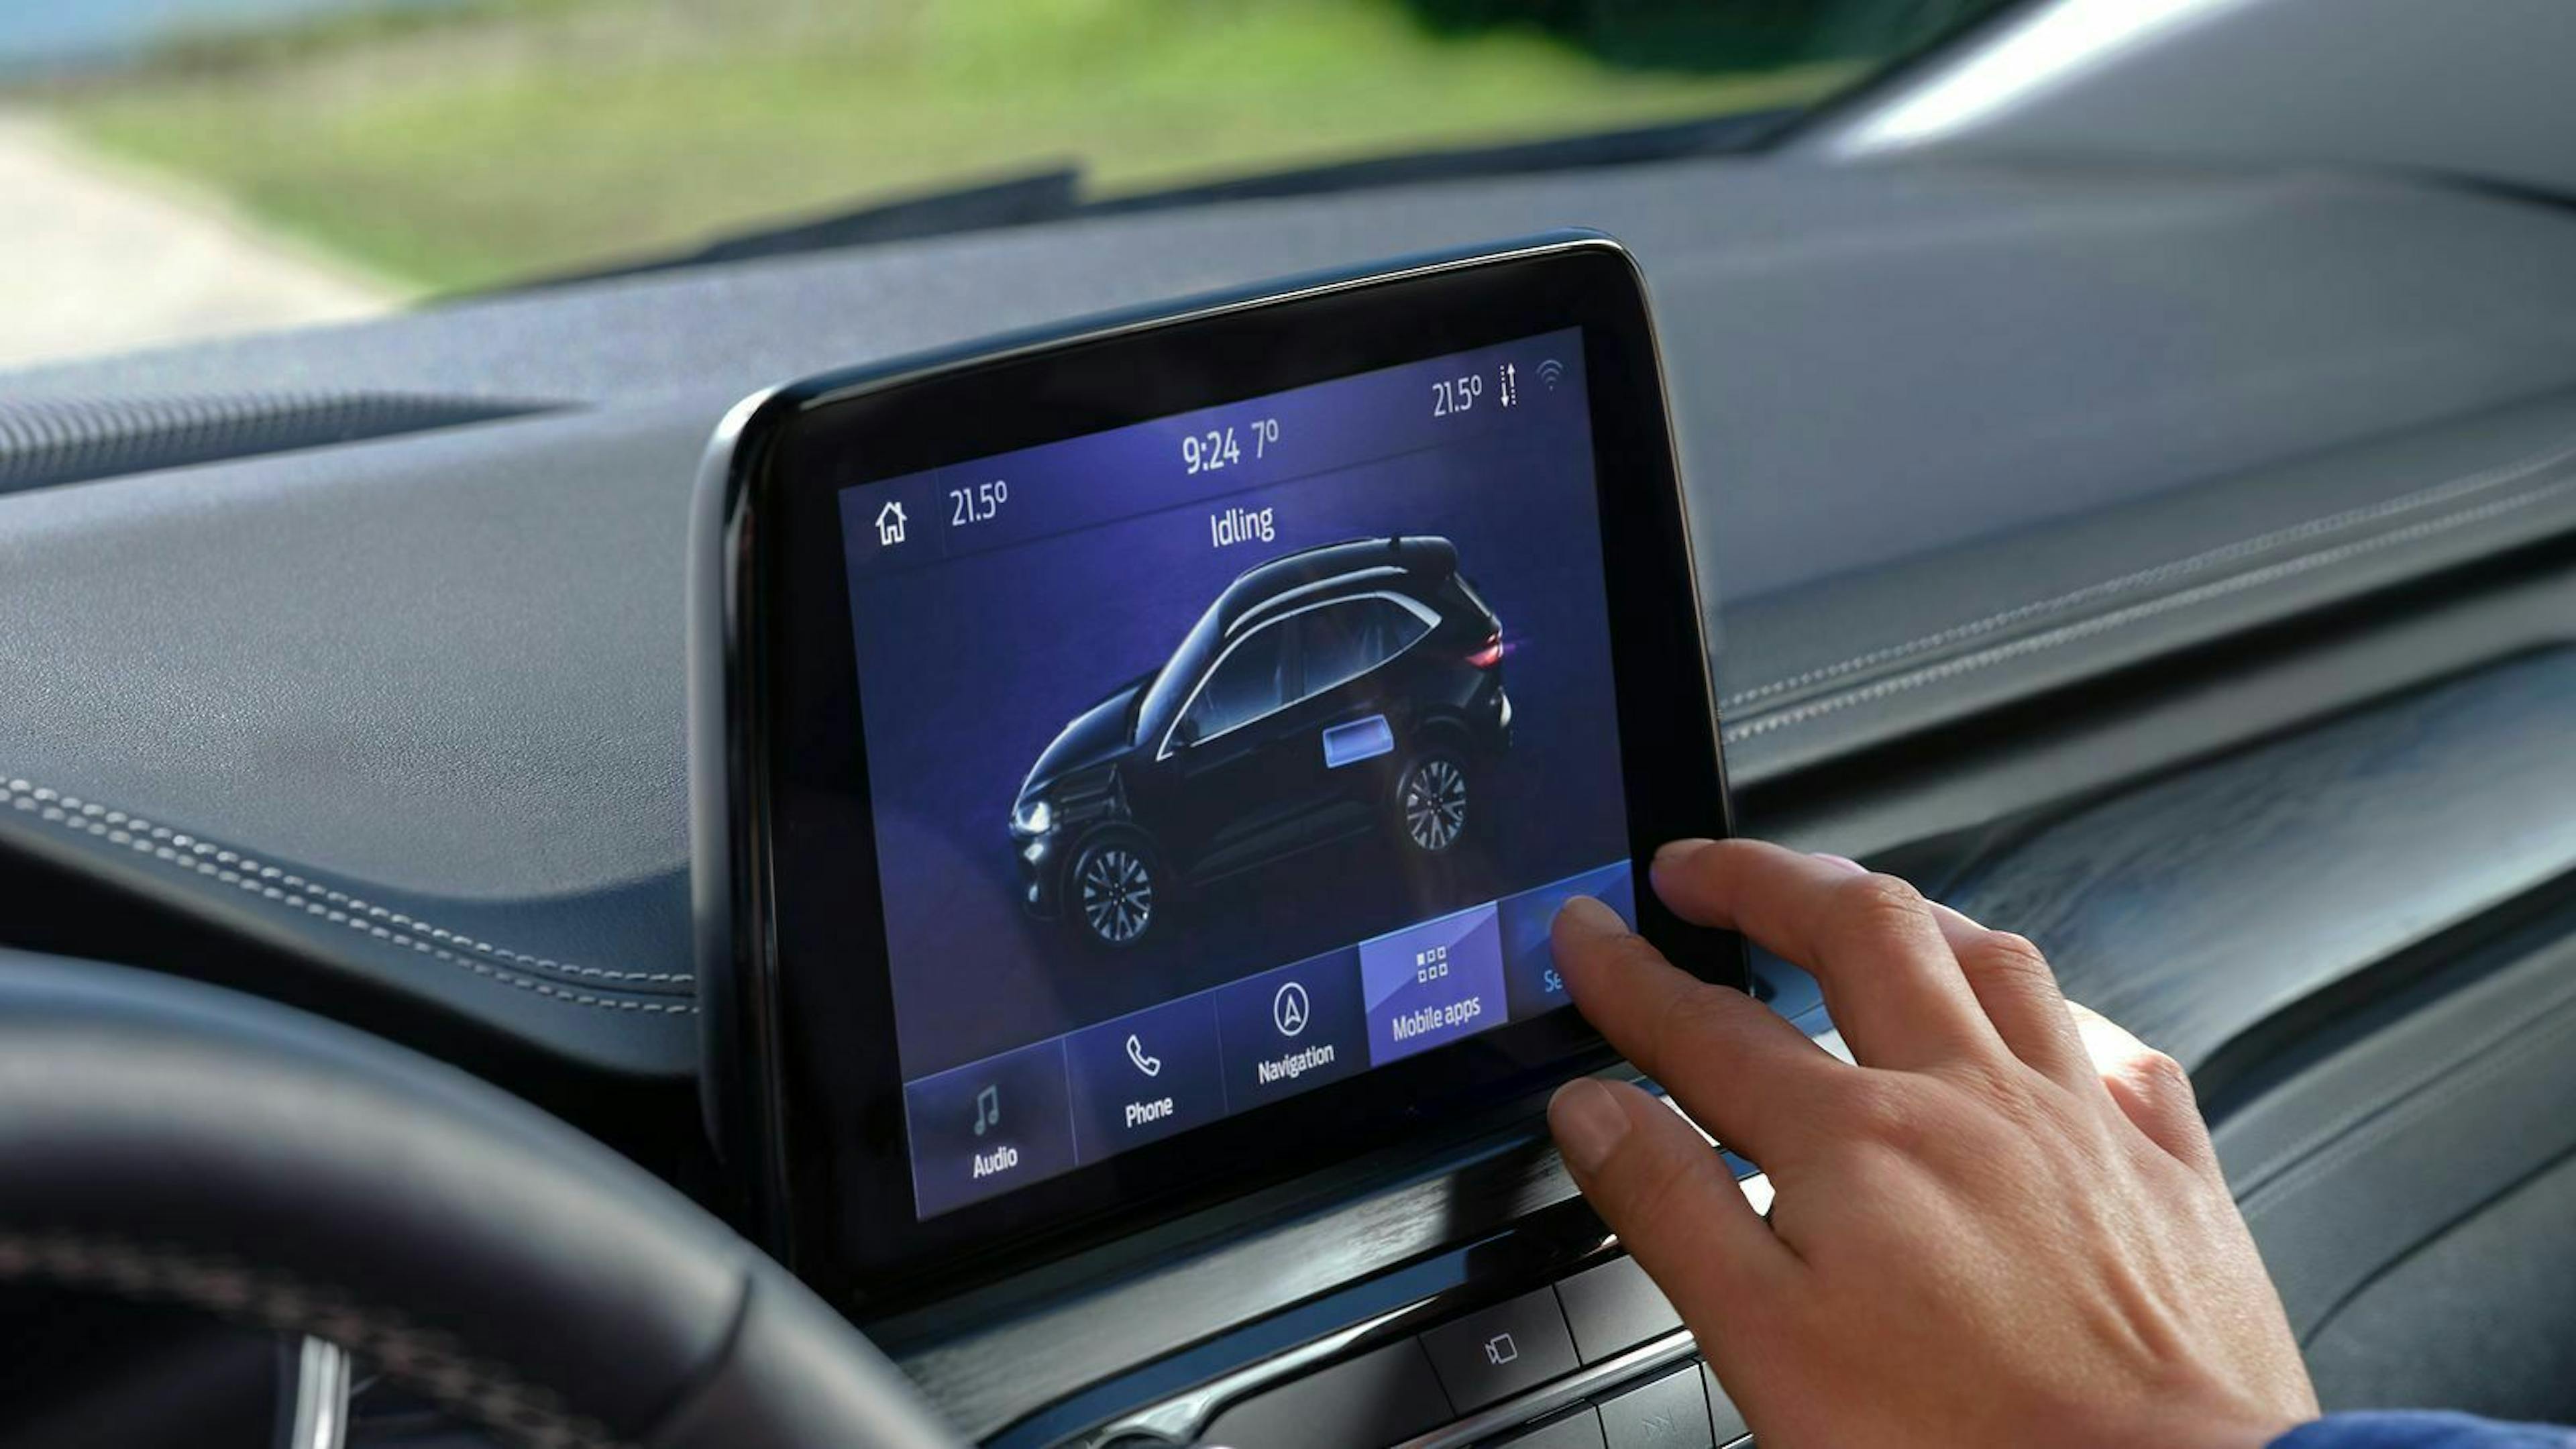 Zu sehen ist der Touchscreen des Ford Kuga